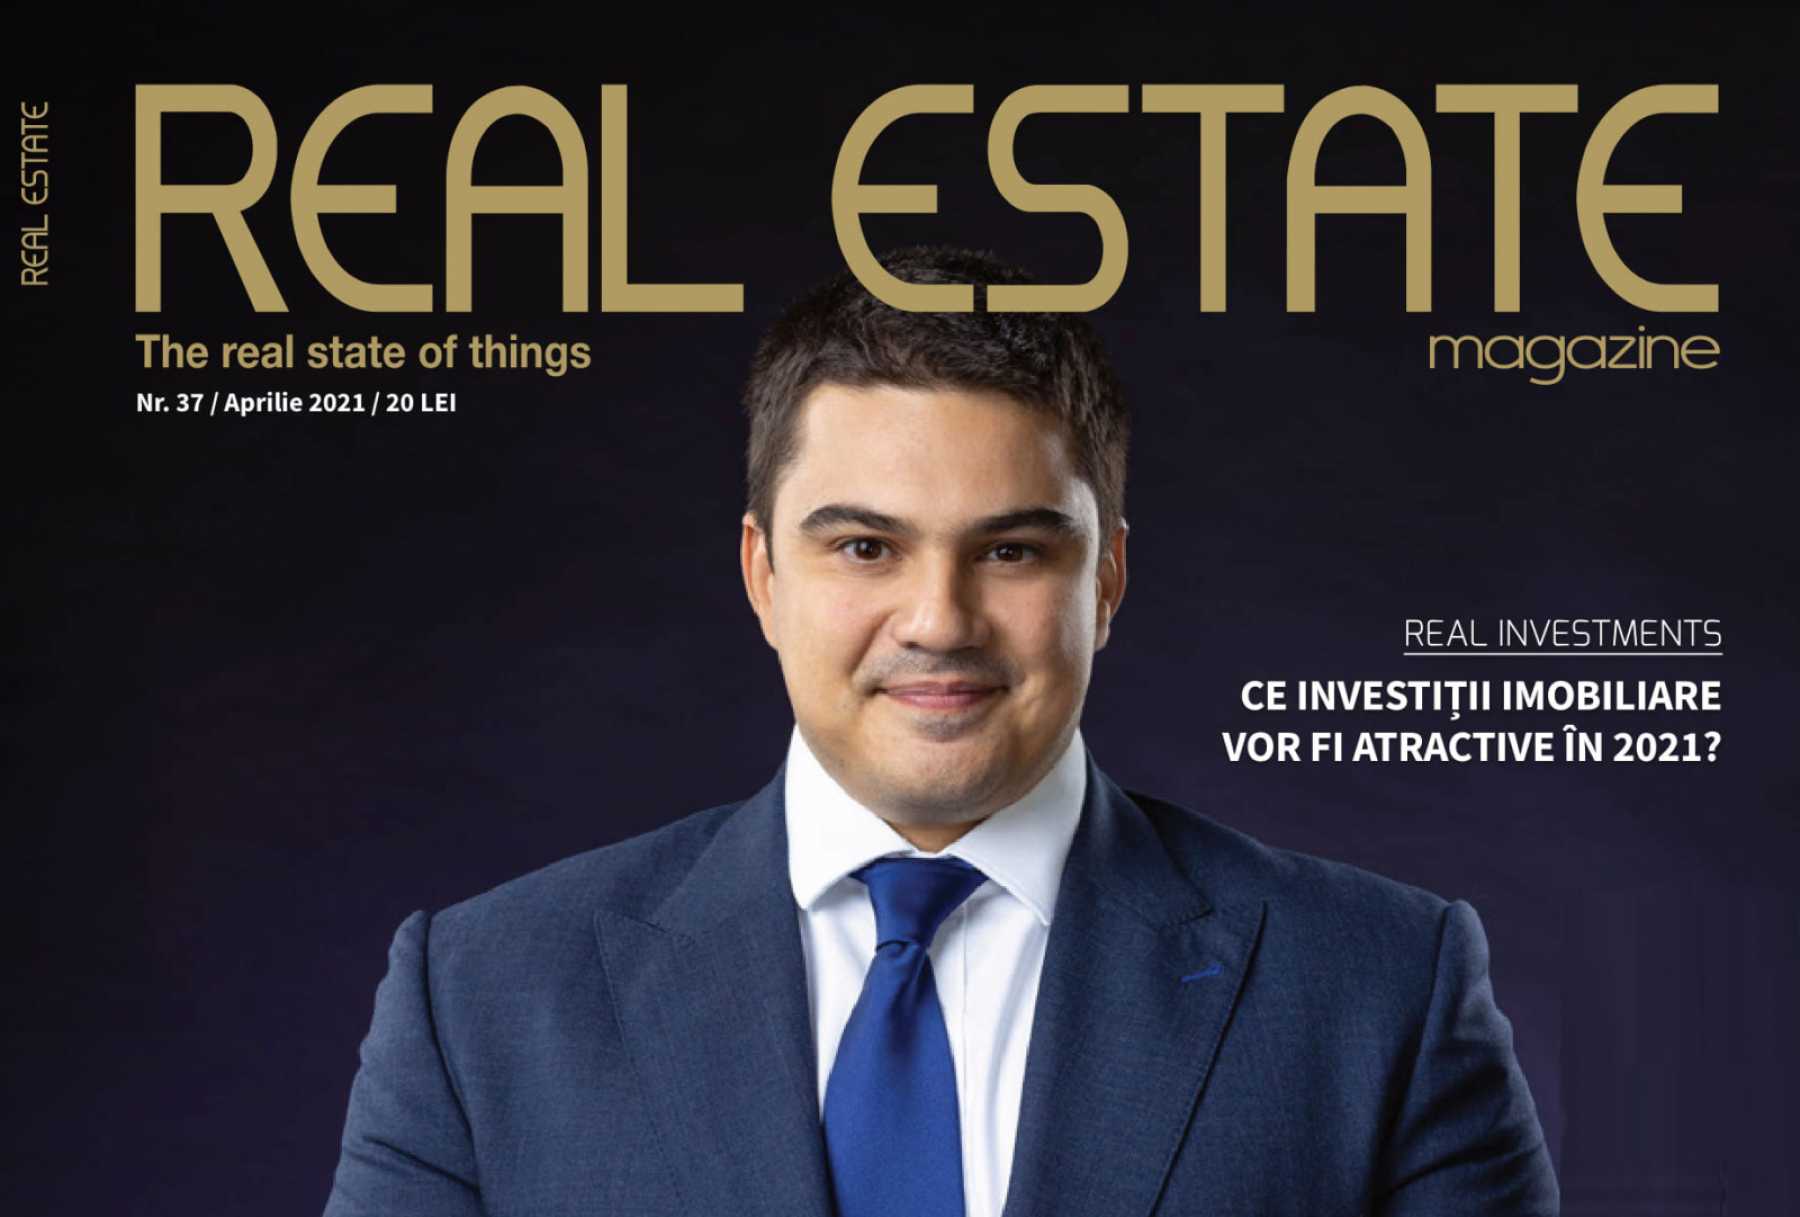 Mihai Păduroiu on the cover of Real Estate Magazine